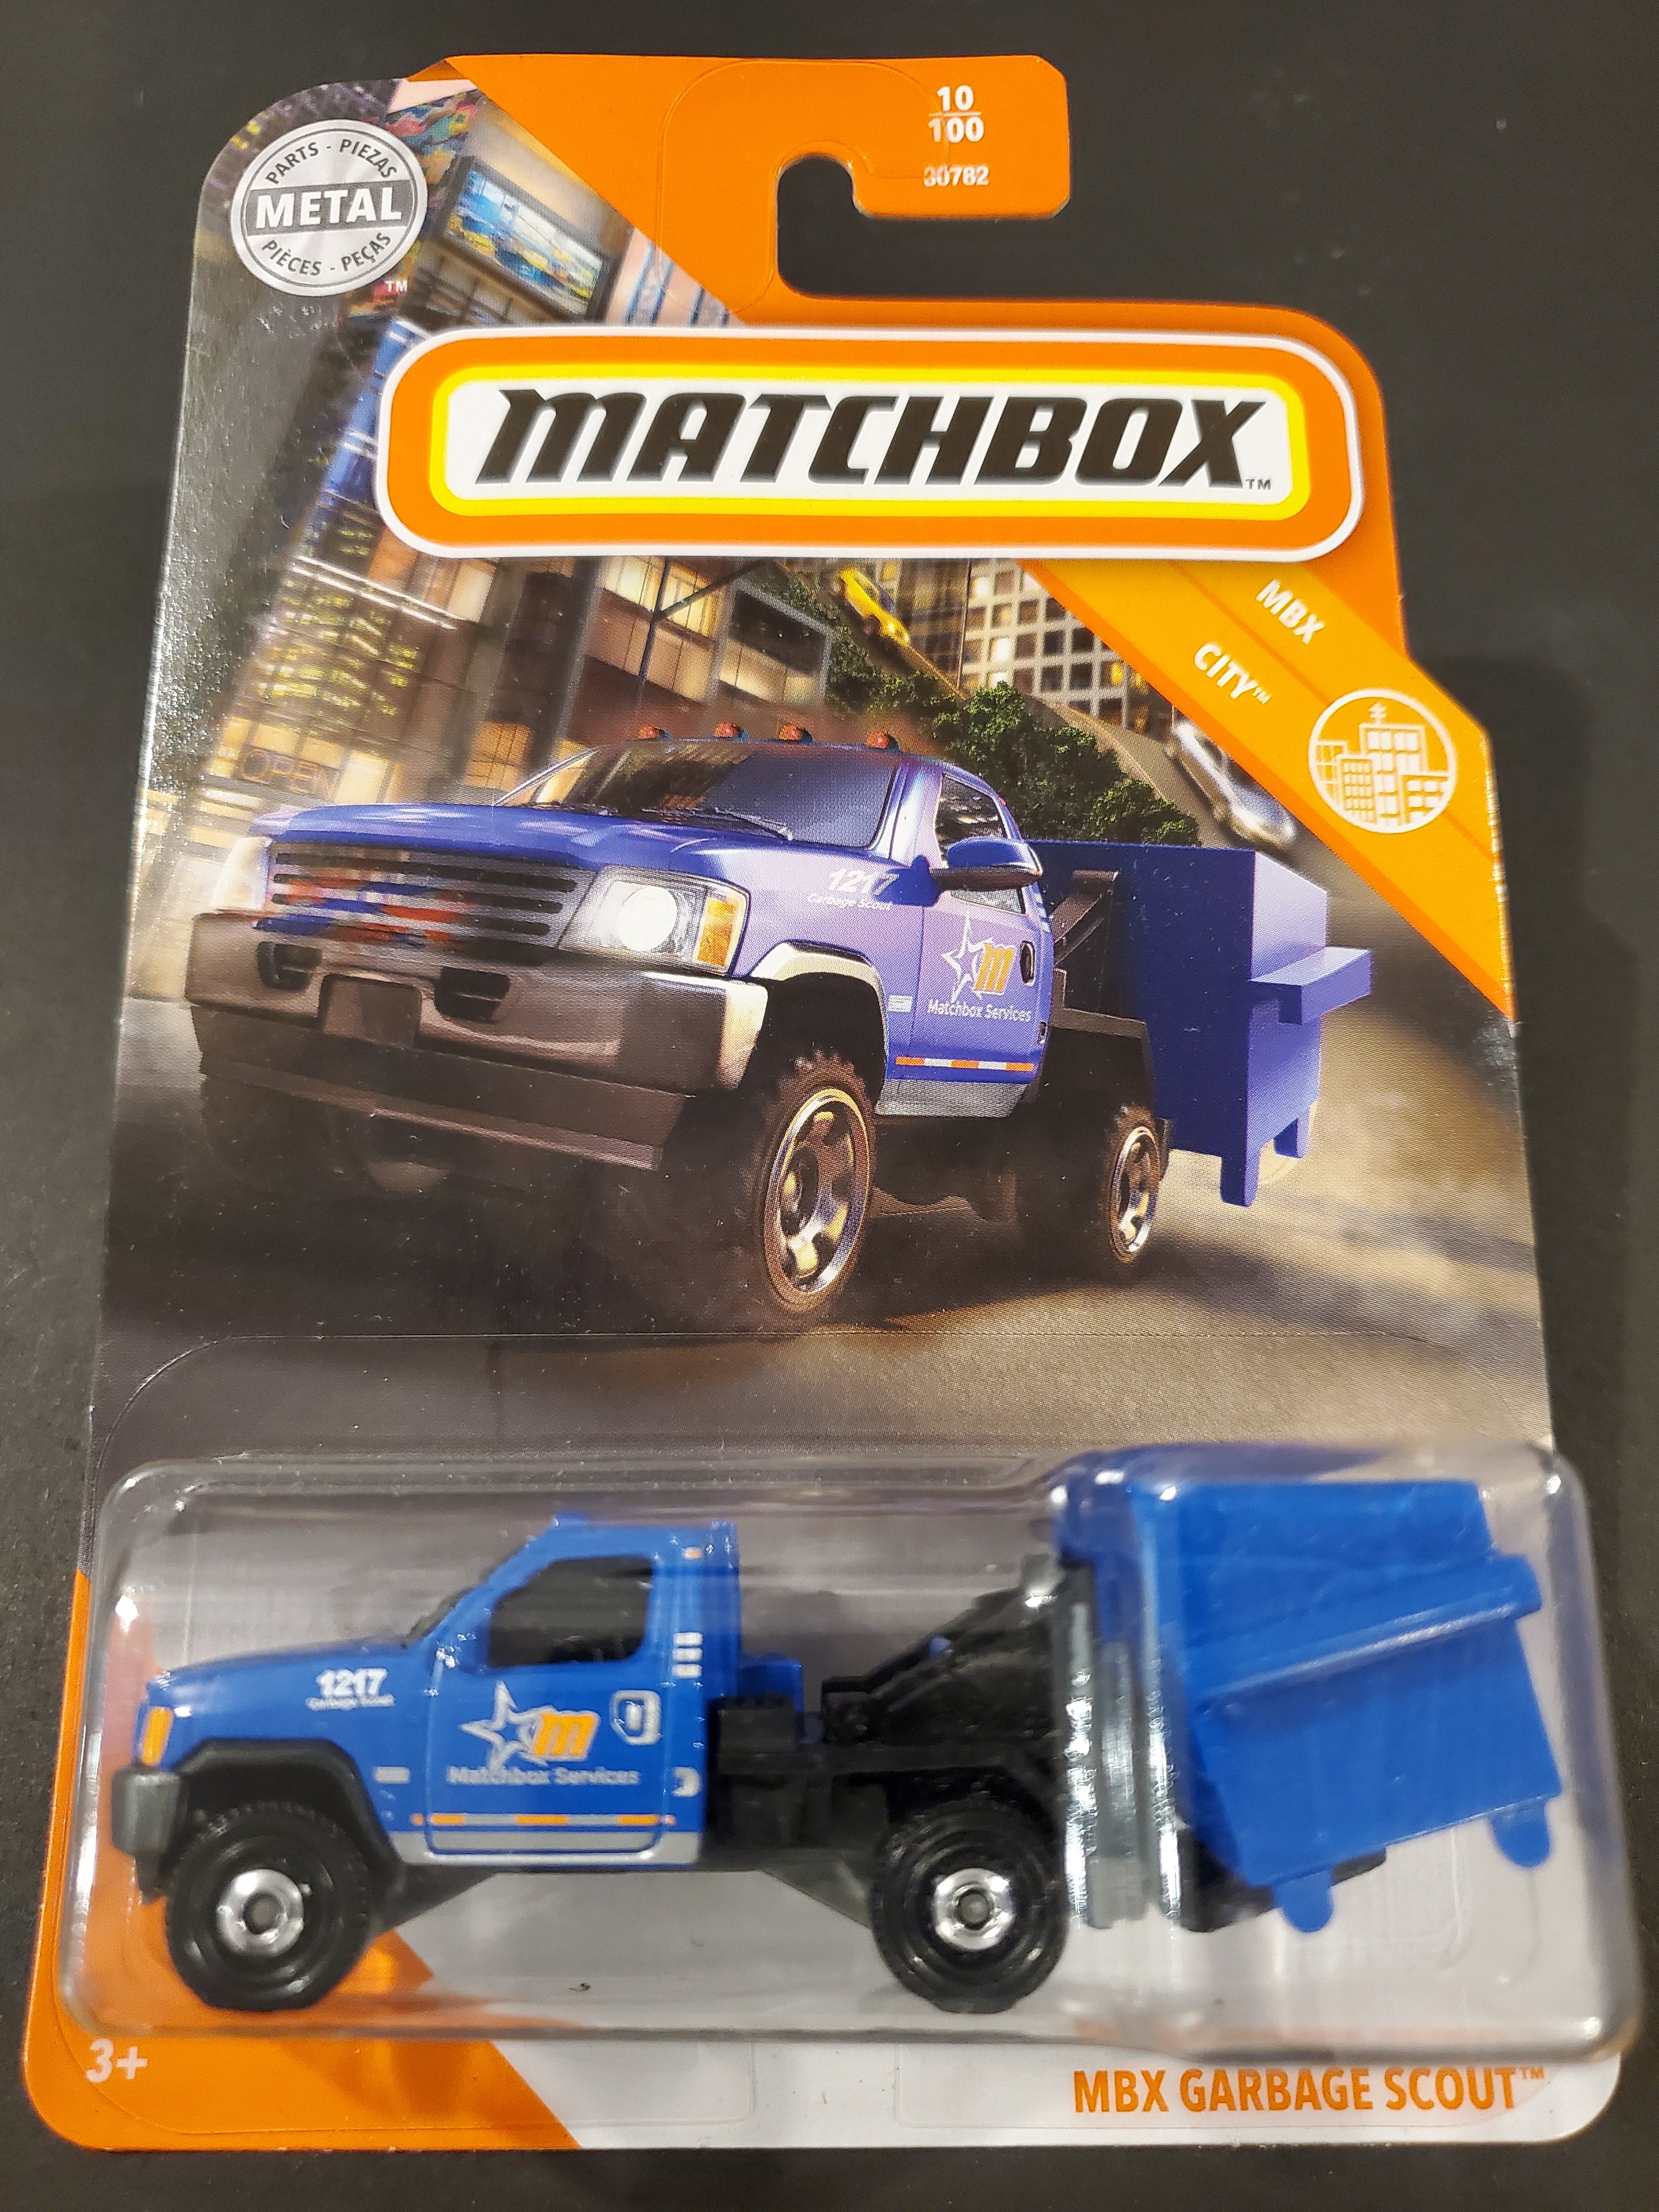 Matchbox MBX Garbage Scout 35/100 Carte courte Mint/menthe